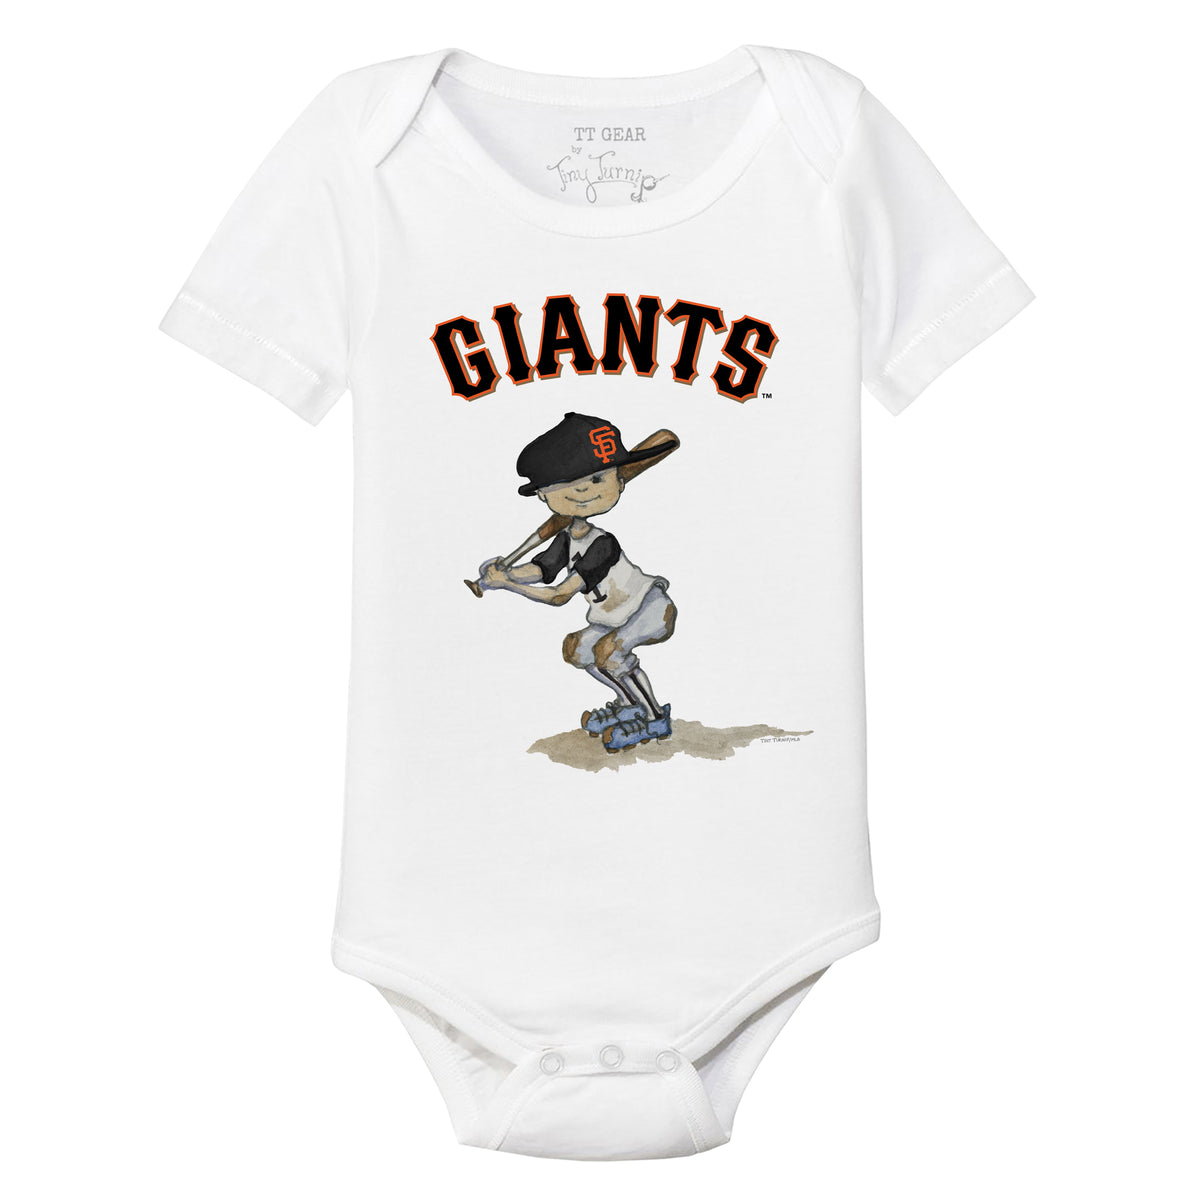 Official San Francisco Giants Gear, Giants Jerseys, Store, Giants